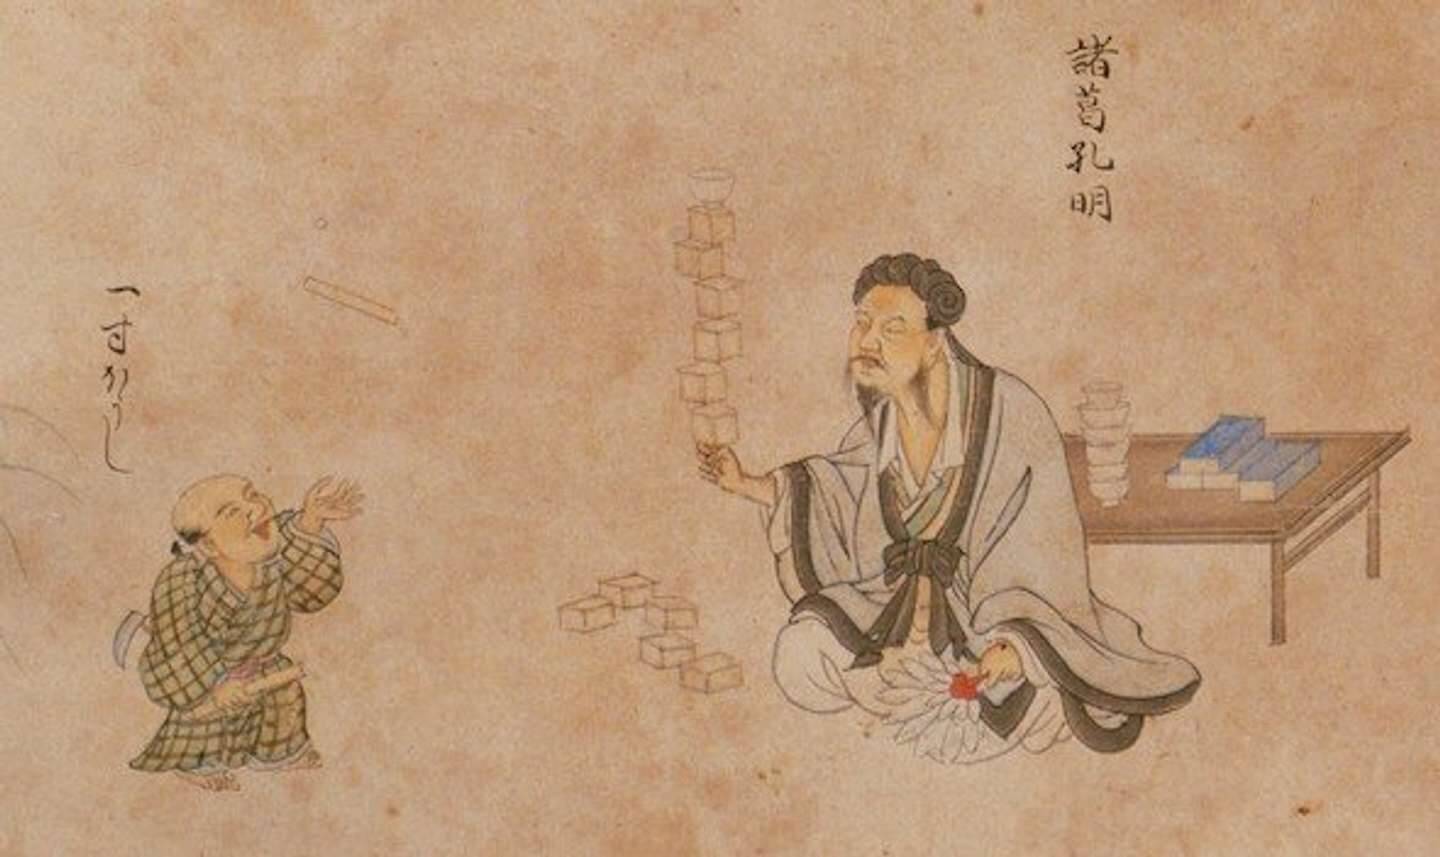 観音様は銃を構え、諸葛孔明は曲芸を披露　江戸時代に書かれた絵に、ツッコミどころが多すぎる